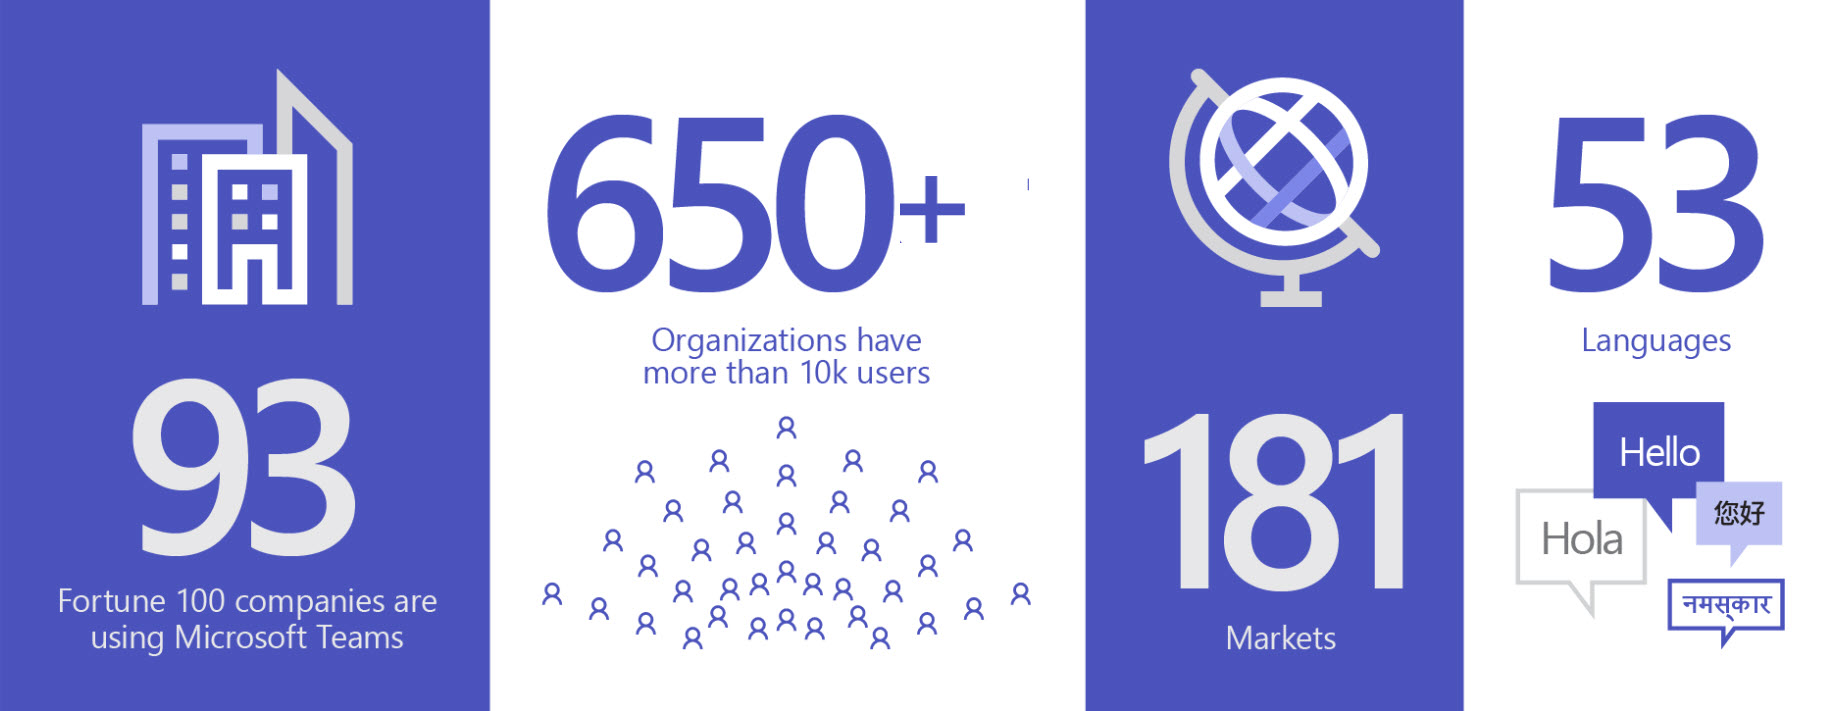 תמונה המציגה 93 ארגונים שמשתמשים ב- Teams, יותר מ- 650 ארגונים שכוללים יותר מ- 10,000 משתמשים, ב- 181 שווקים ו- 53 שפות.